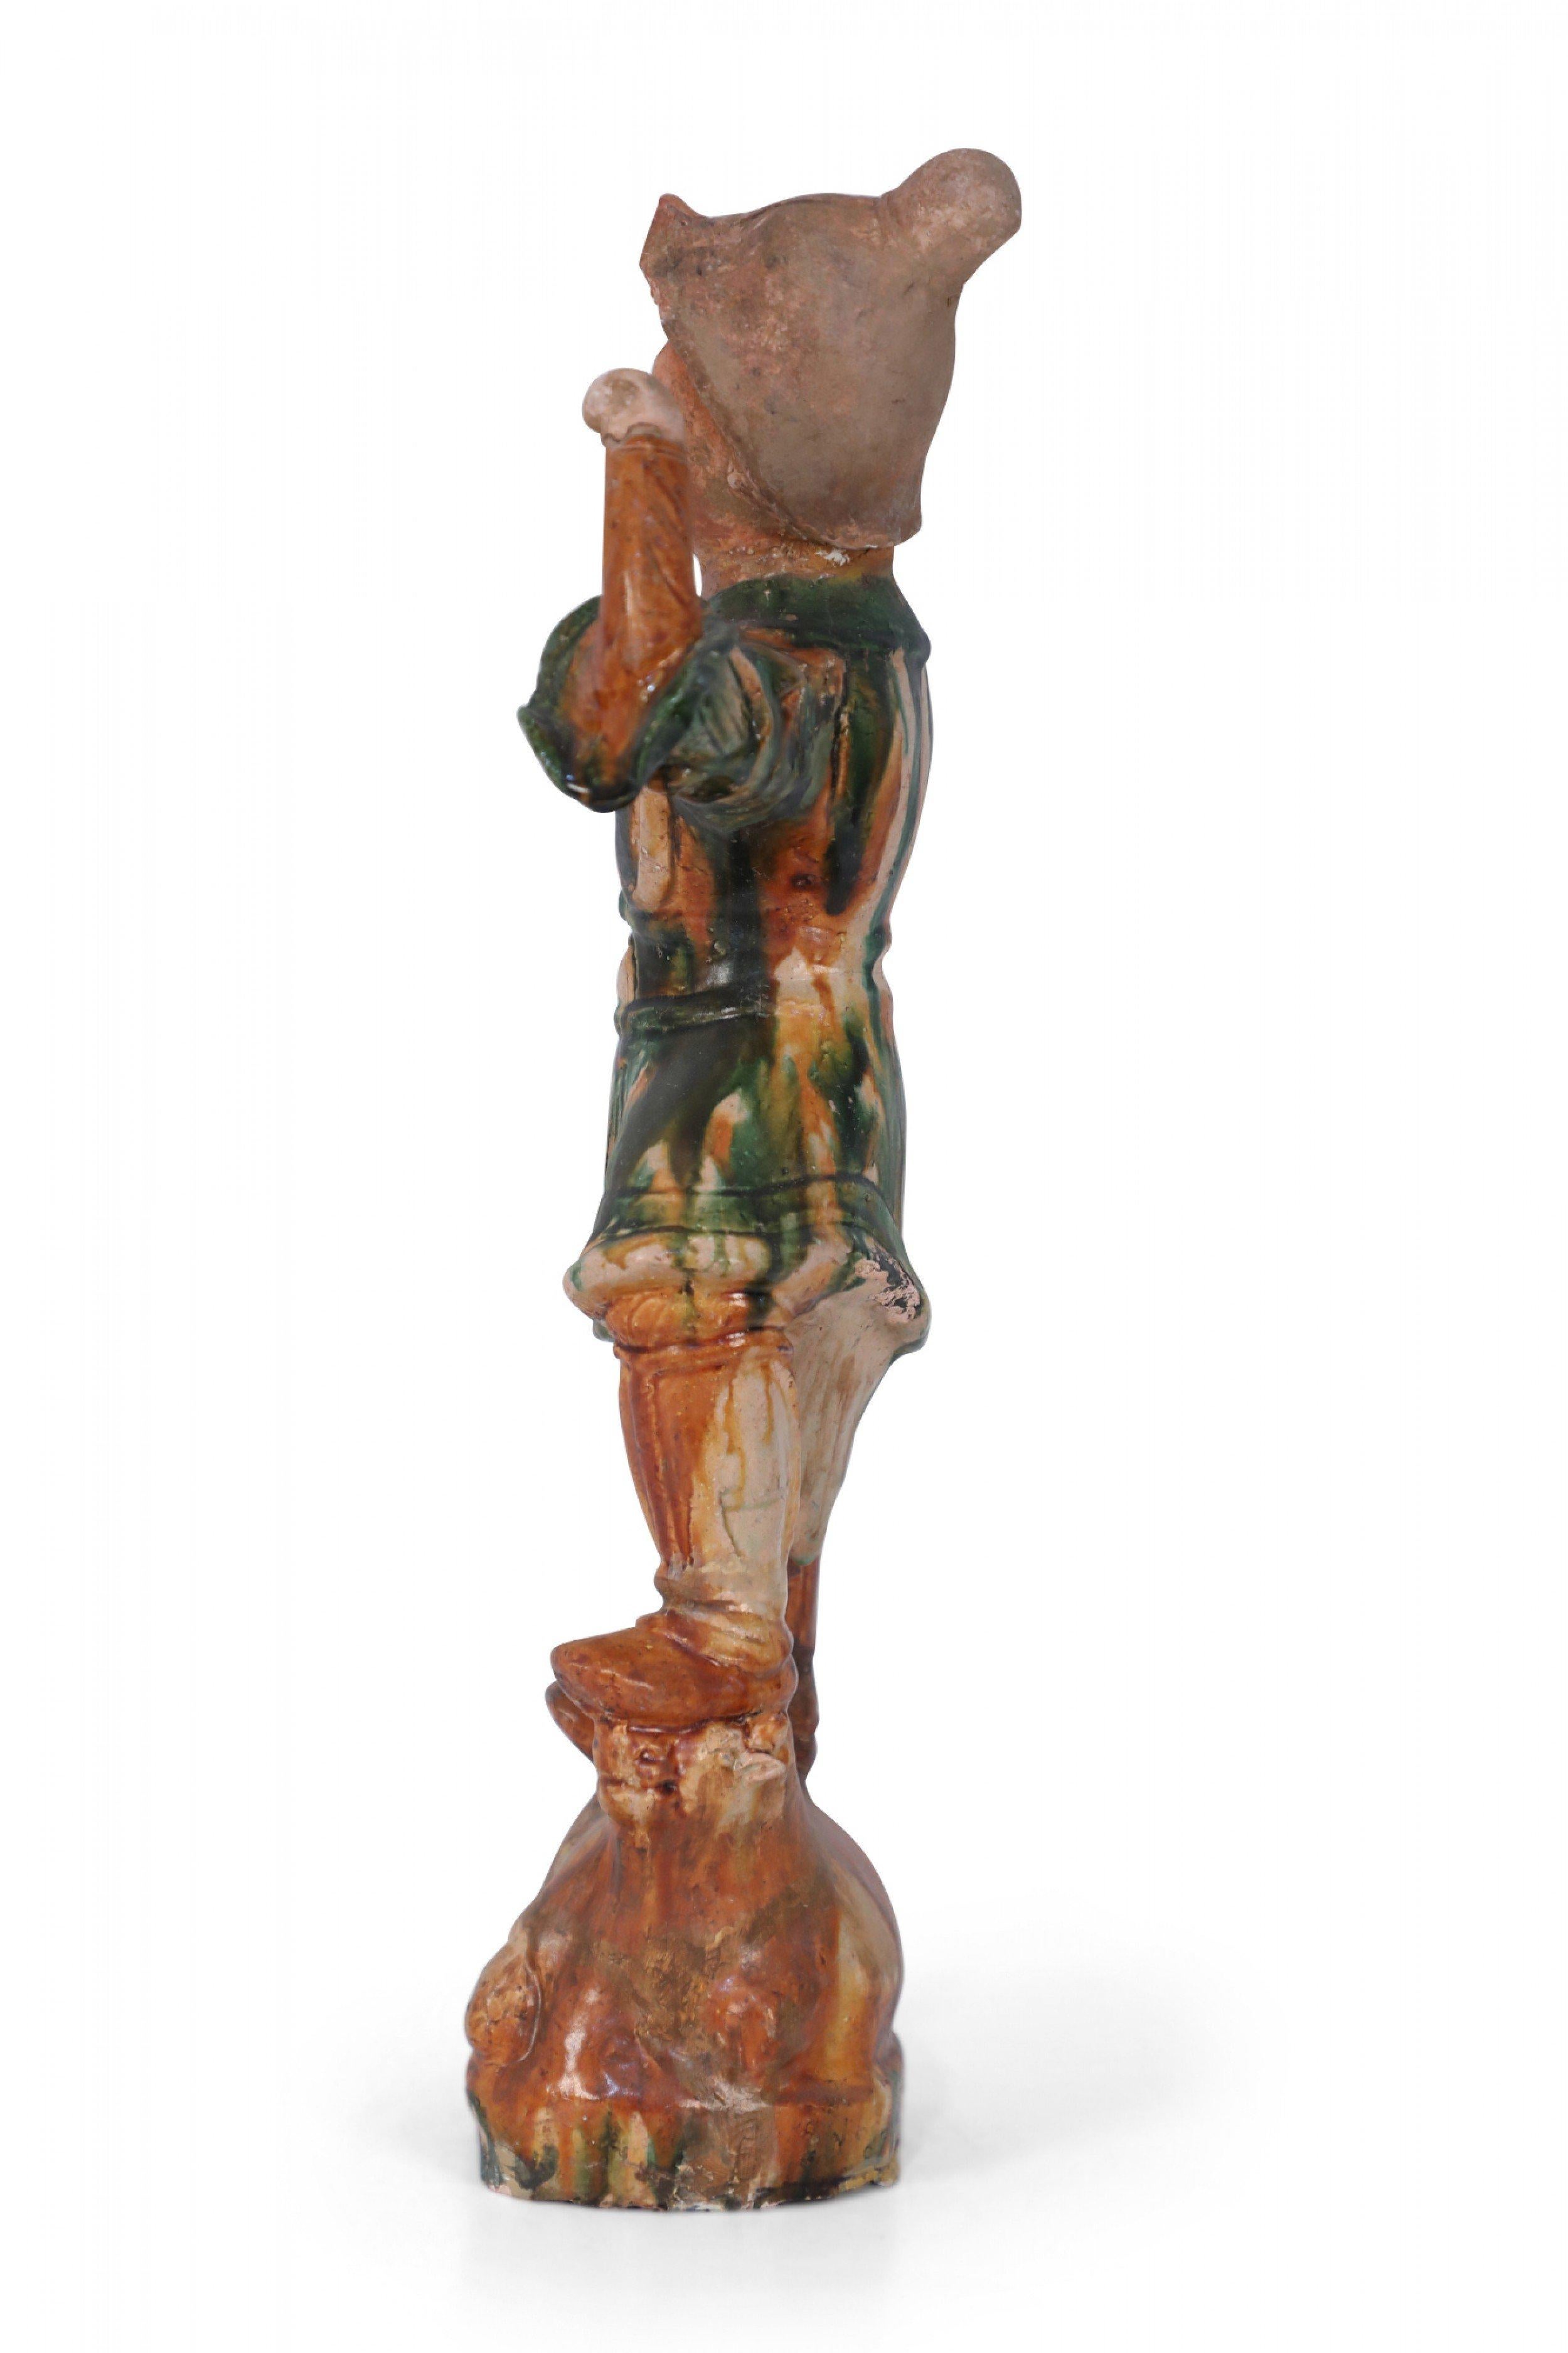 Antique figurine de gardien de tombeau en terre cuite de style chinois de la dynastie Tang, dans sa position typique d'un pied plus haut que l'autre, reposant sur un animal, ici une vache, et avec un bras levé. Elle a été réalisée avec la glaçure